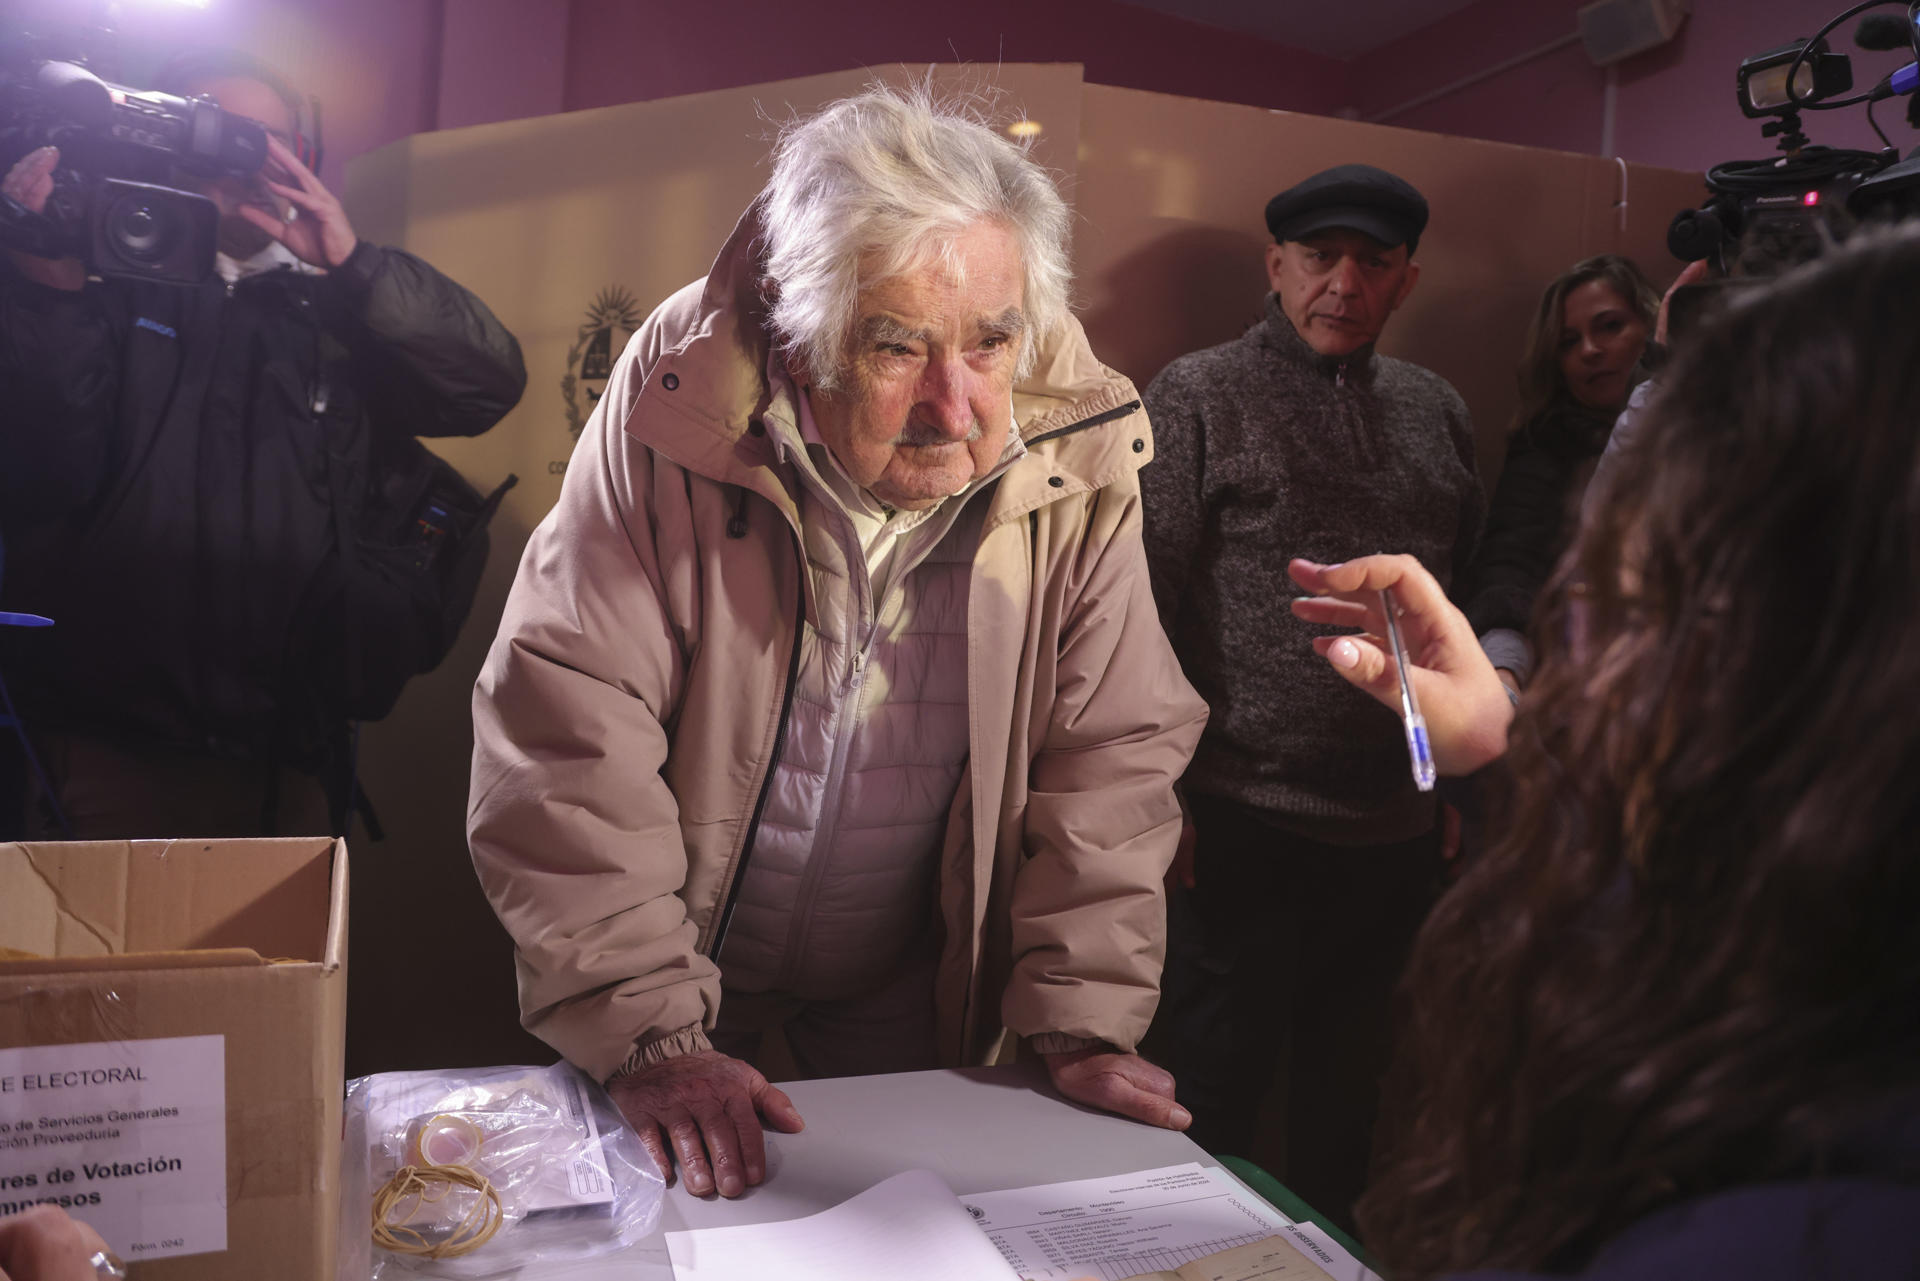 El expresidente de Uruguay José Mujica, durante su acto de votación en las elecciones internas. EFE/Gastón Britos